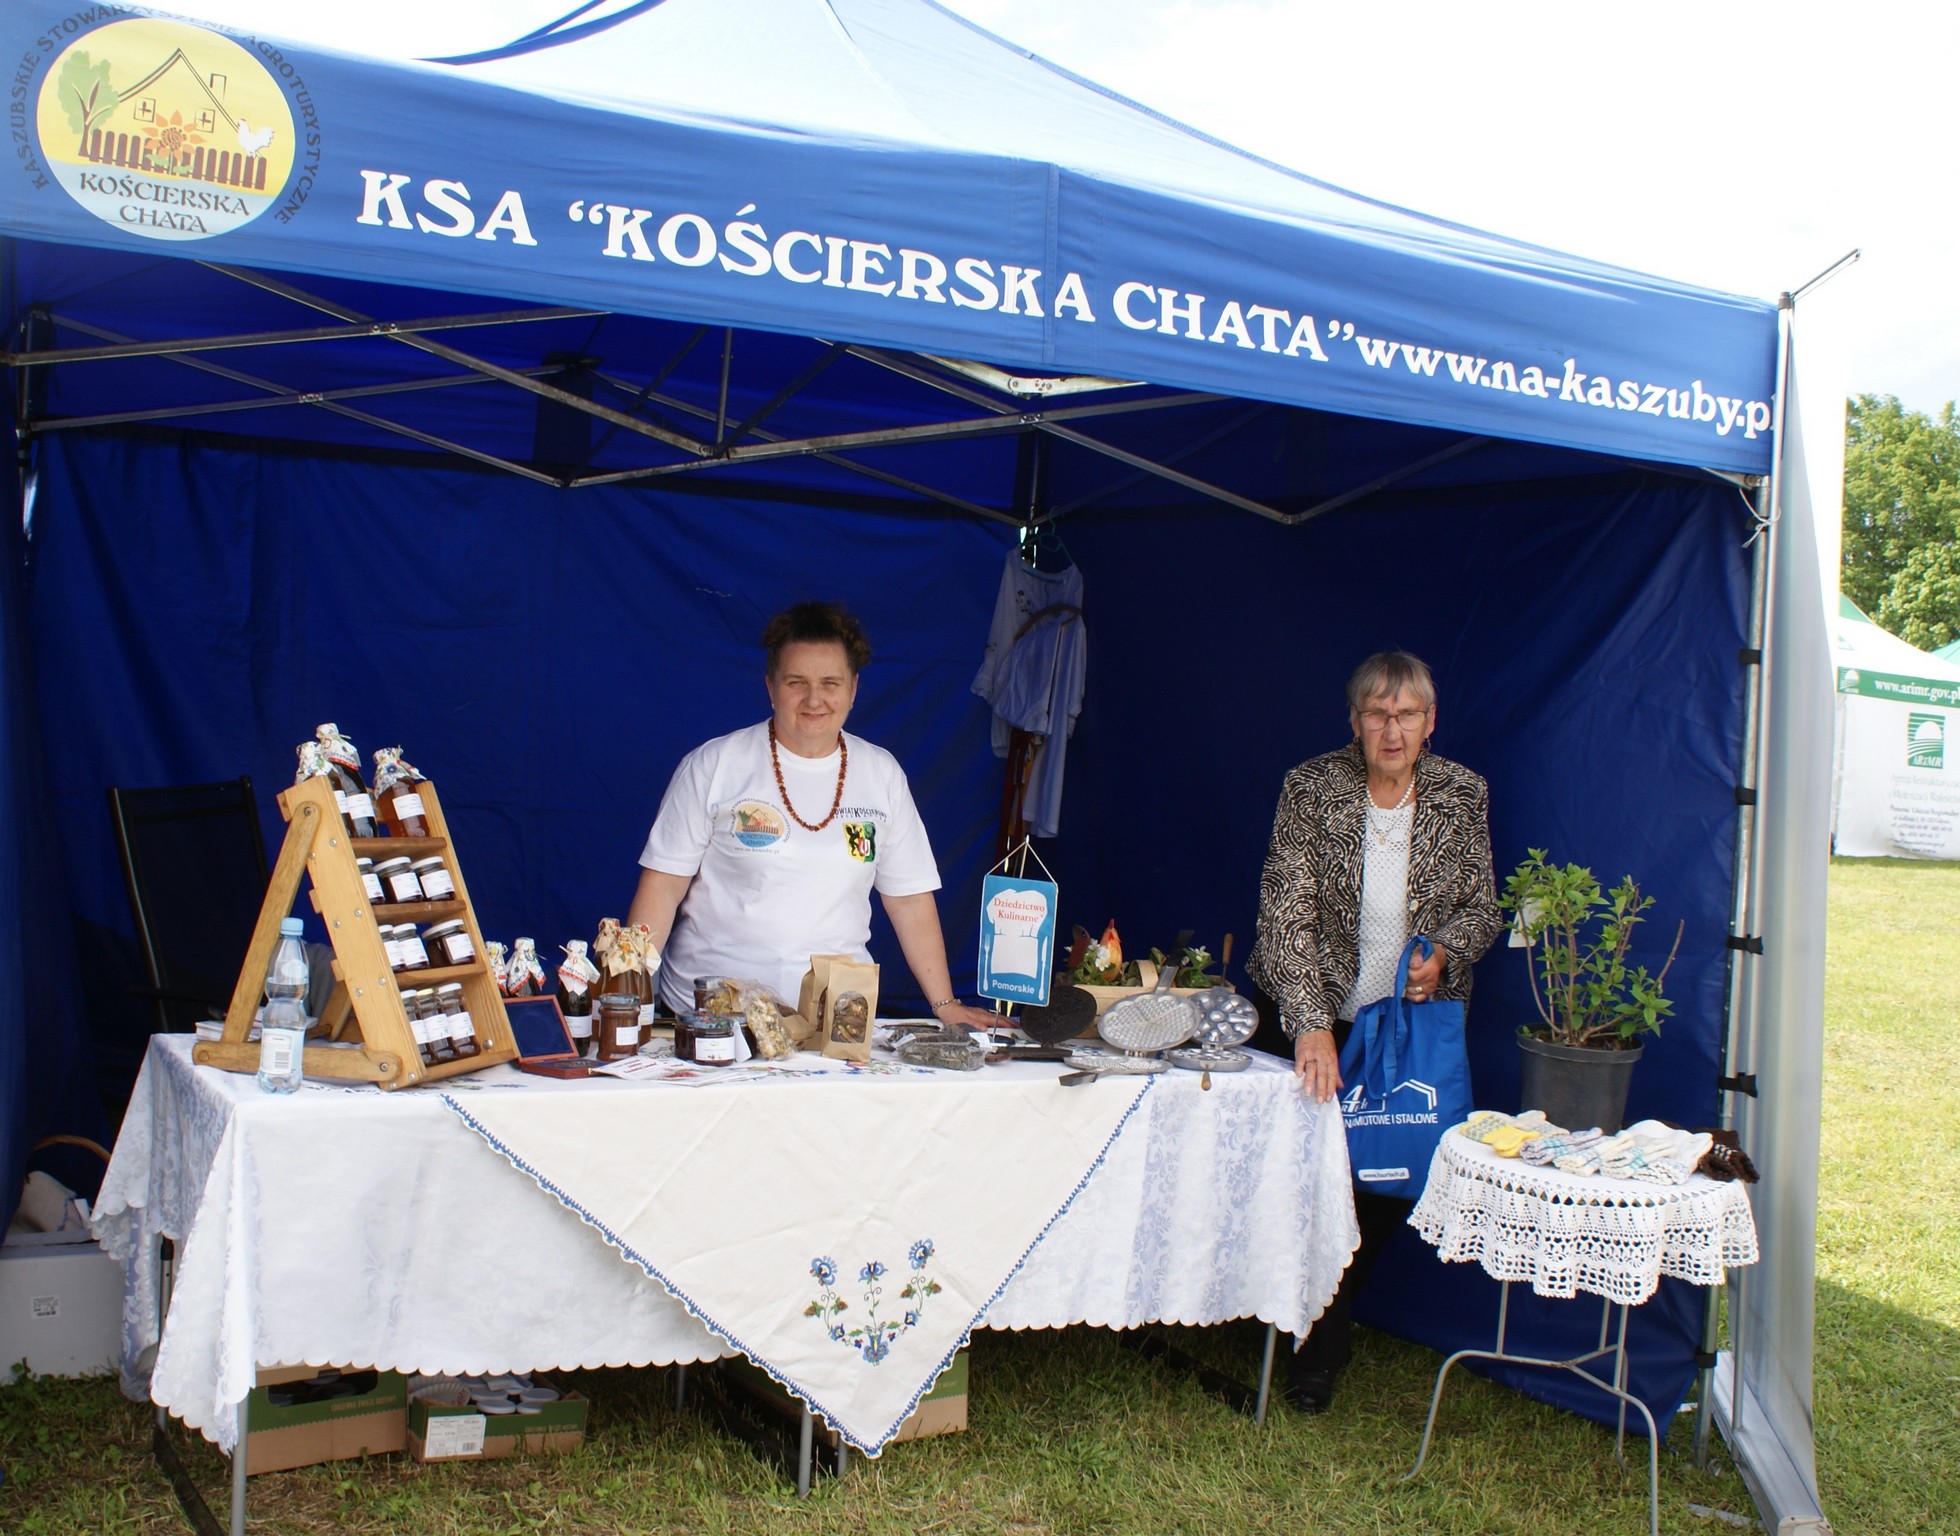 KSA KOŚCIERSKA CHATA prezentacja produktów regionalnych i tradycyjnych